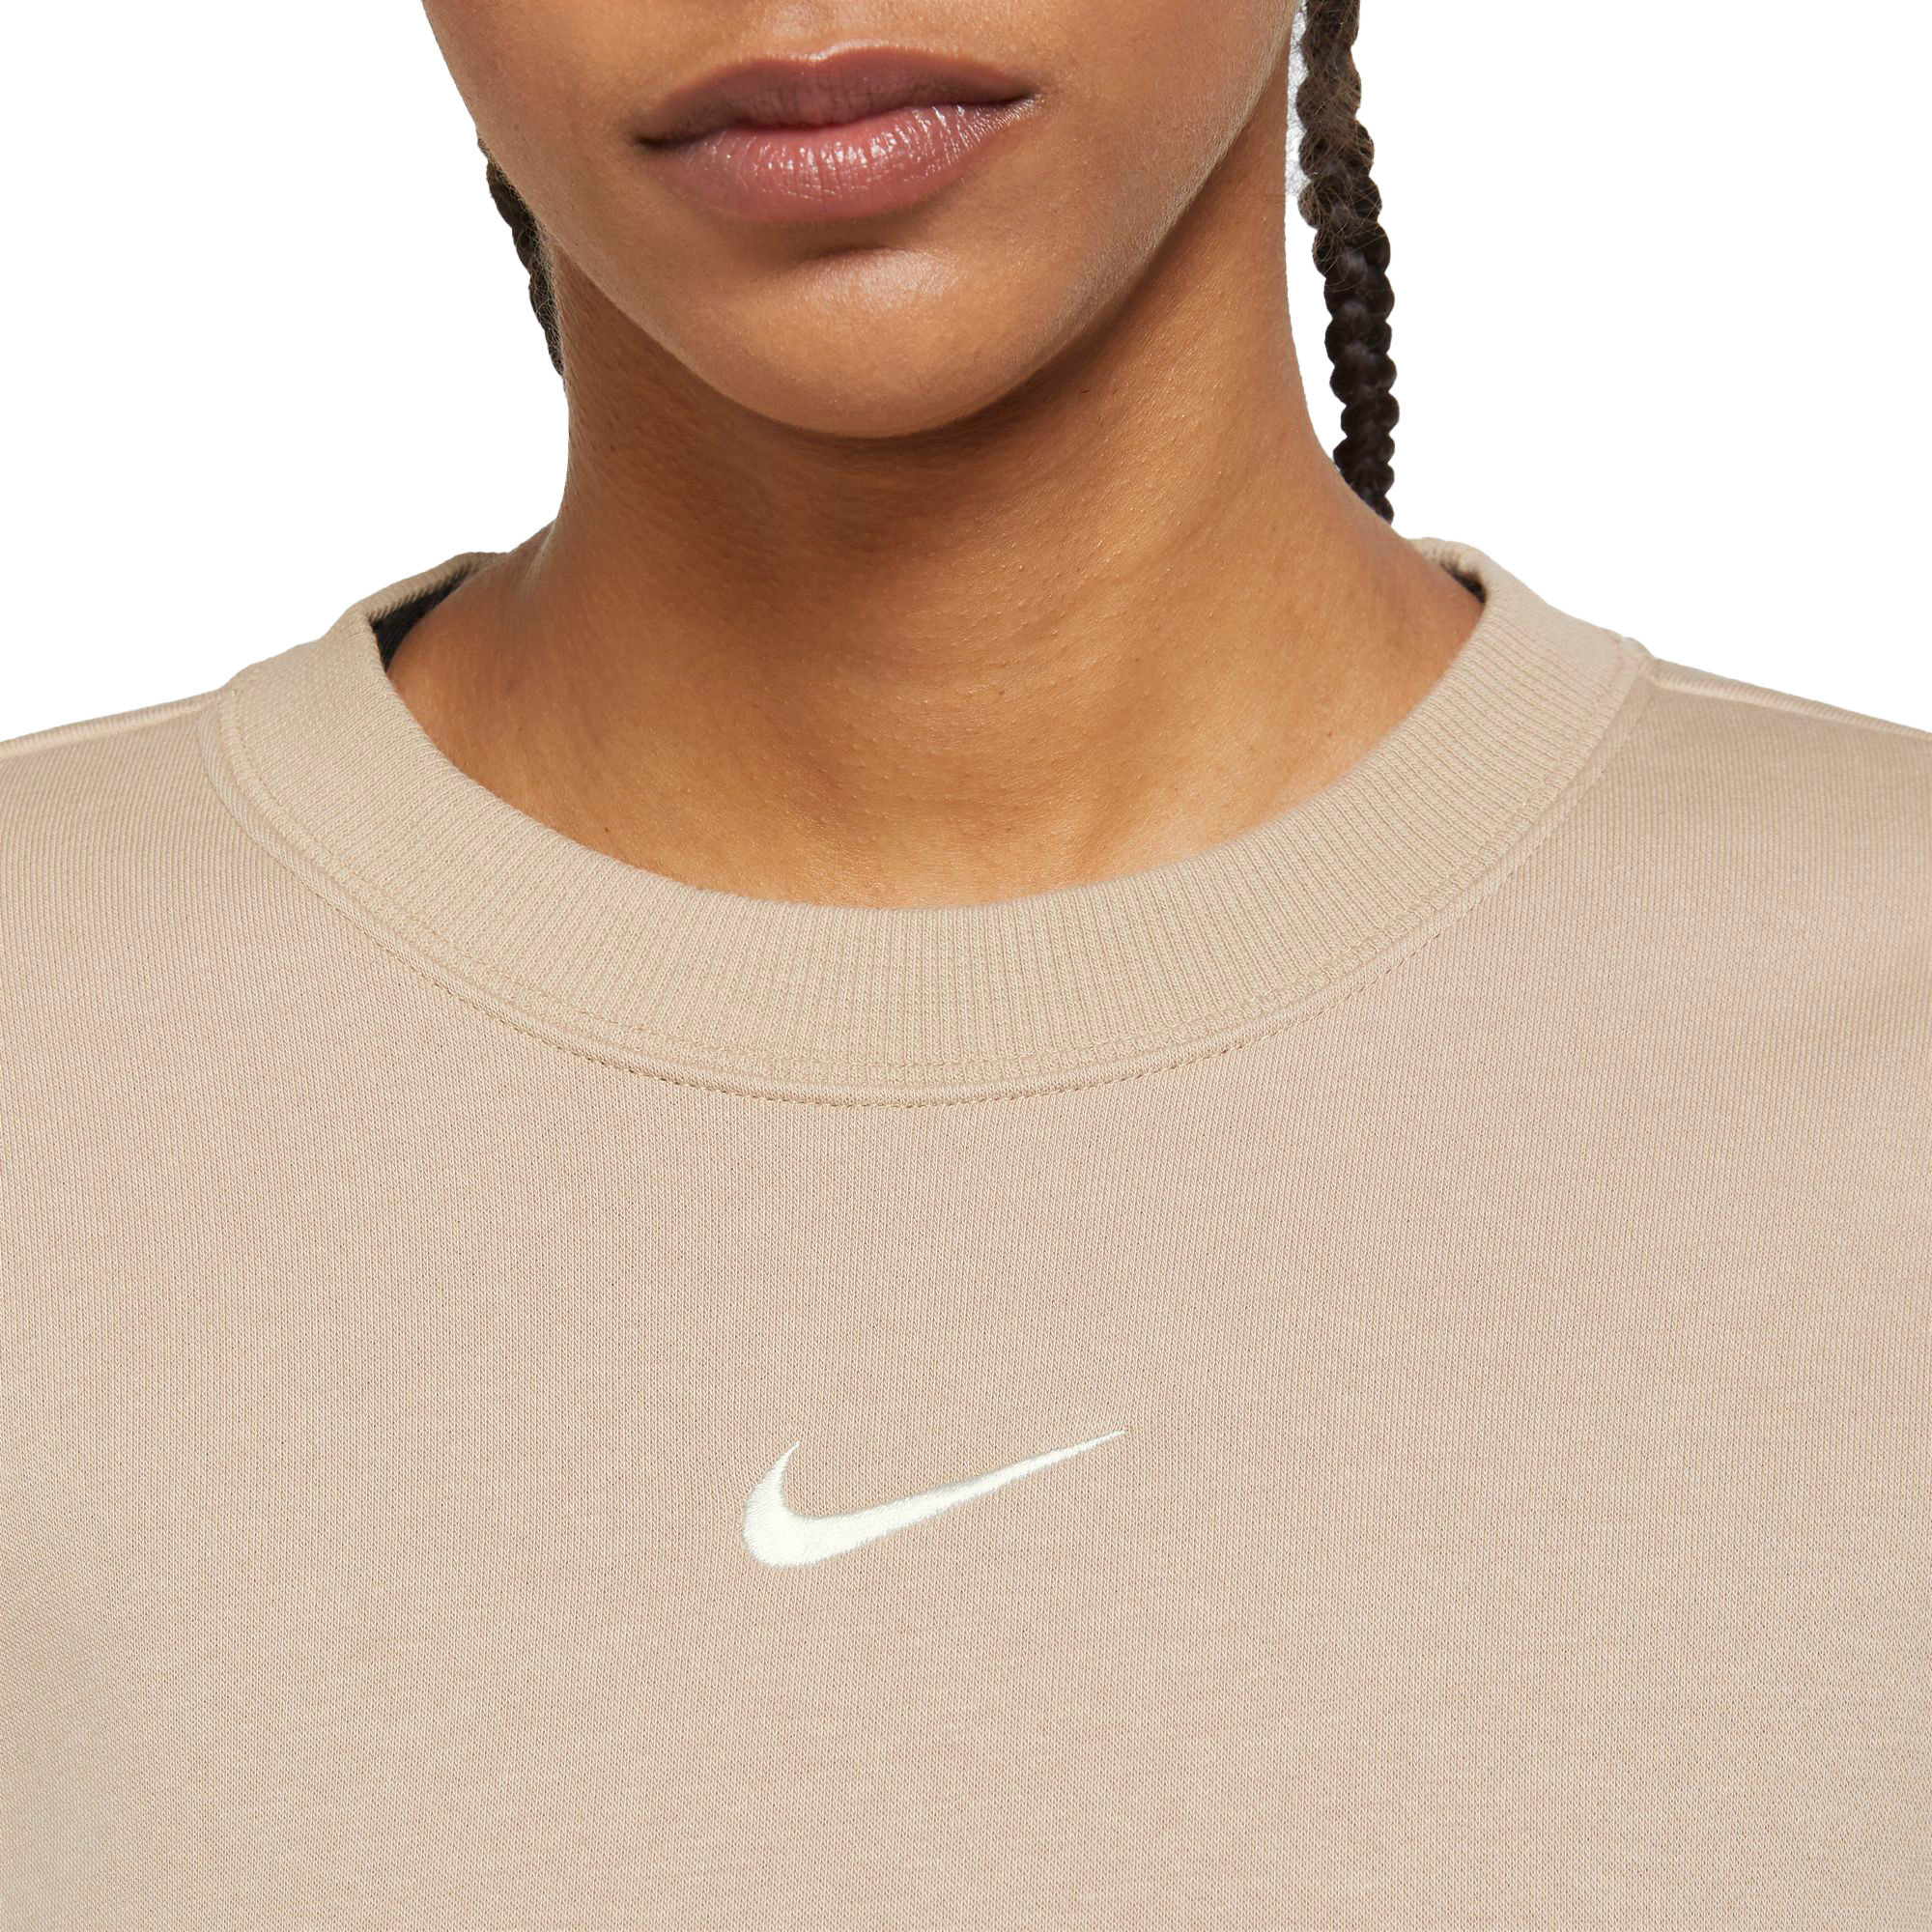 Phoenix Suns NBA BASKETBALL Nike Women's Cut Size Large Mid Layer  Sweatshirt!